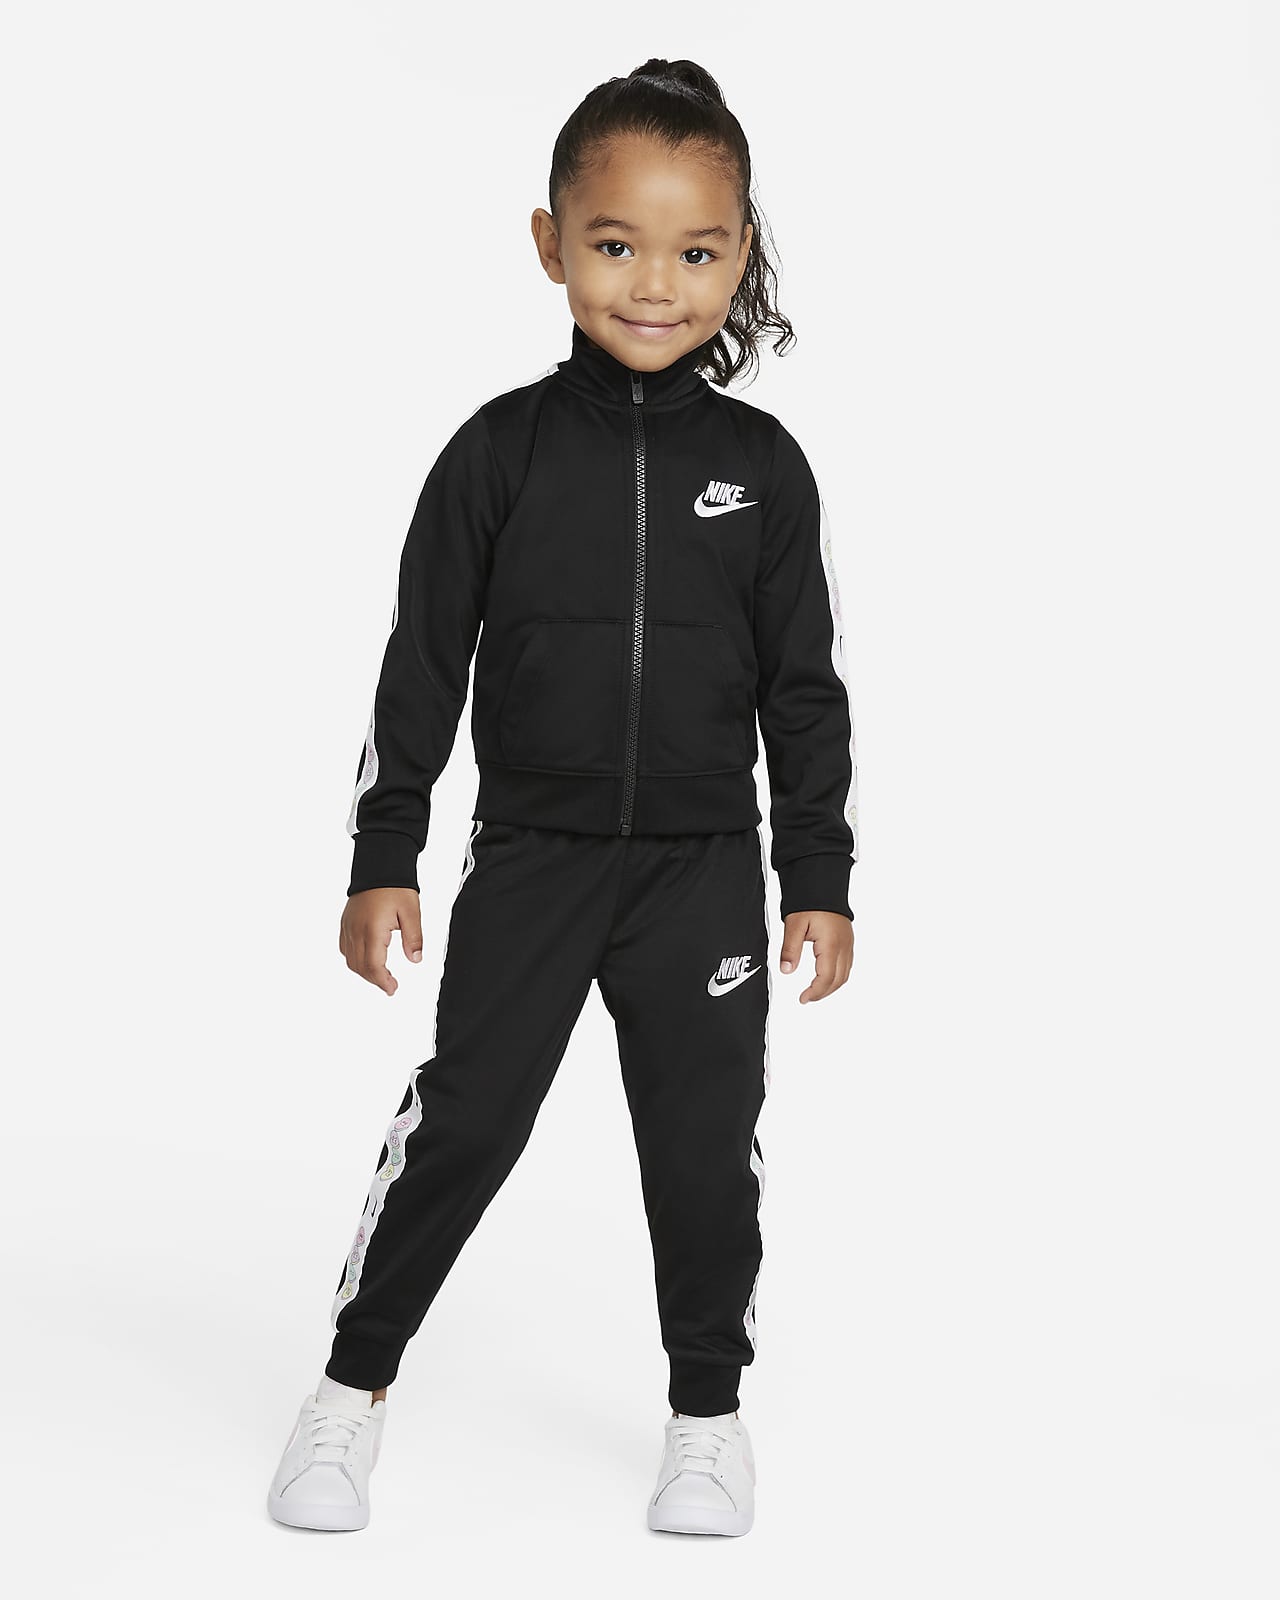 Nike Toddler Tracksuit Set